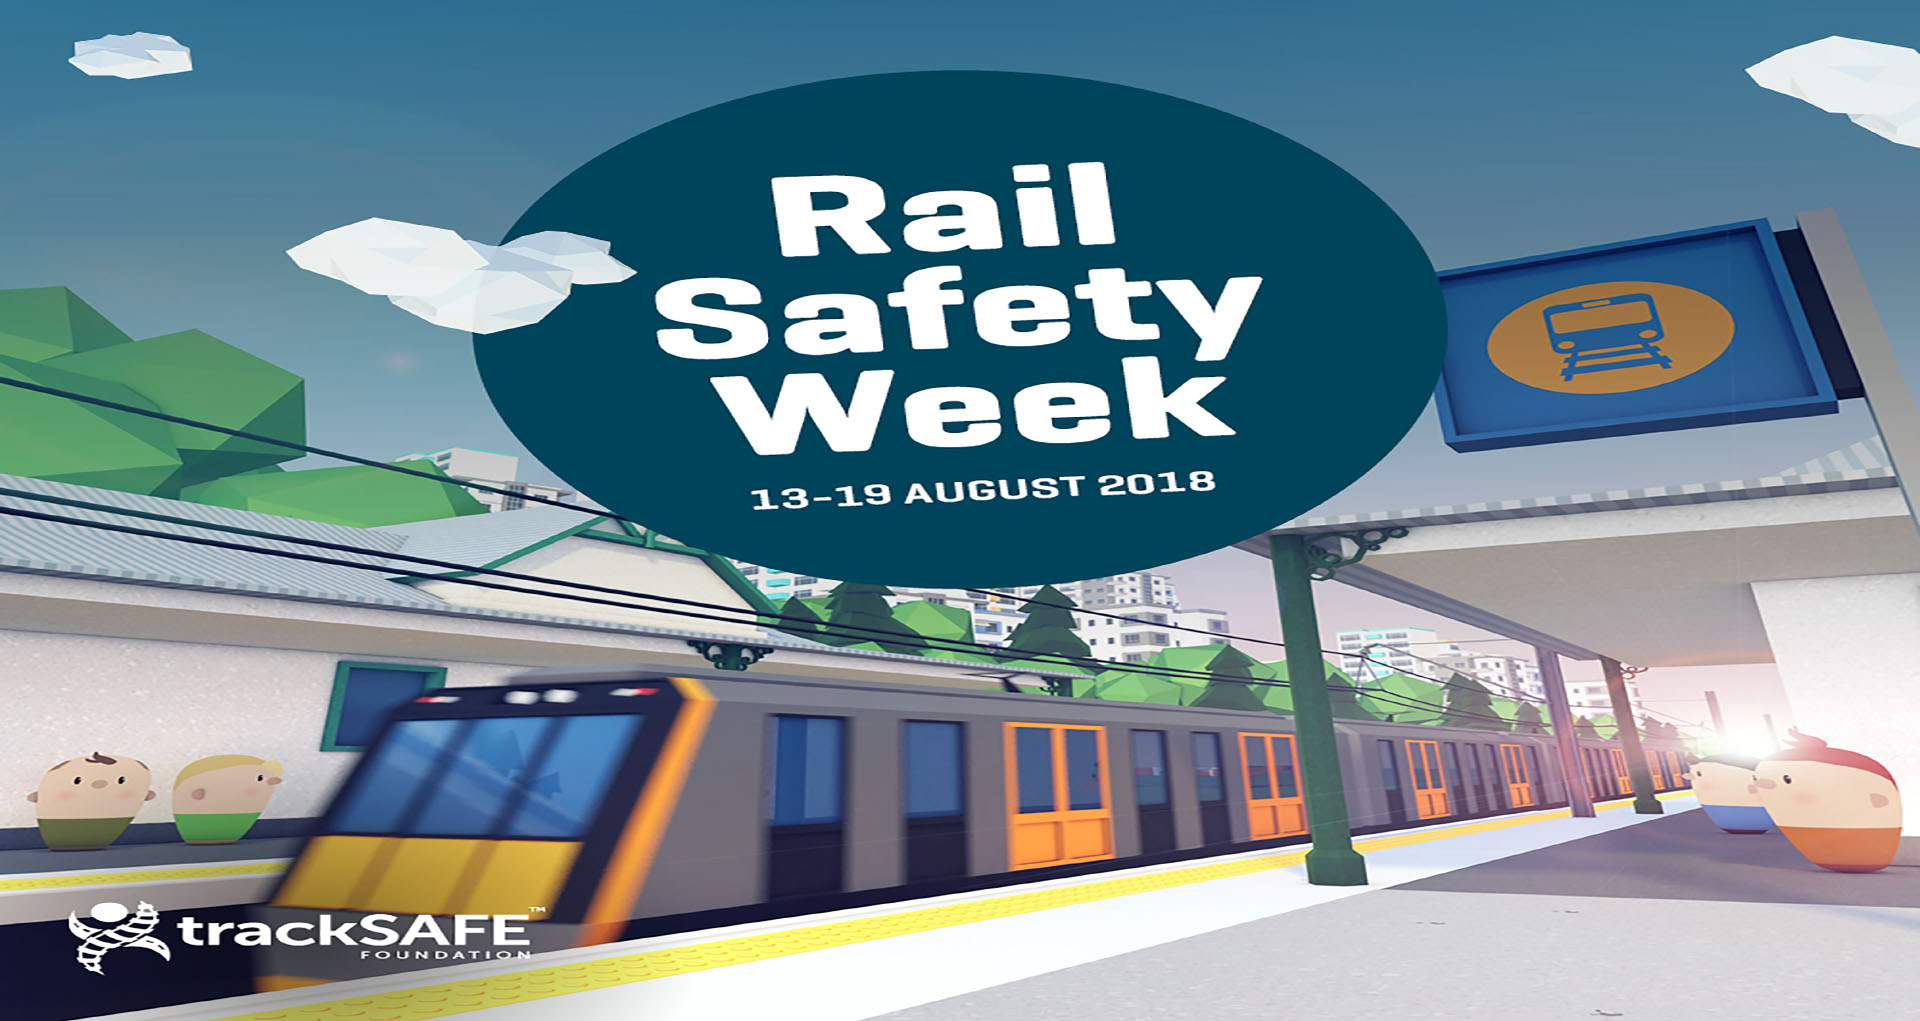 Re-sized for blog - RSW social media image passenger rail